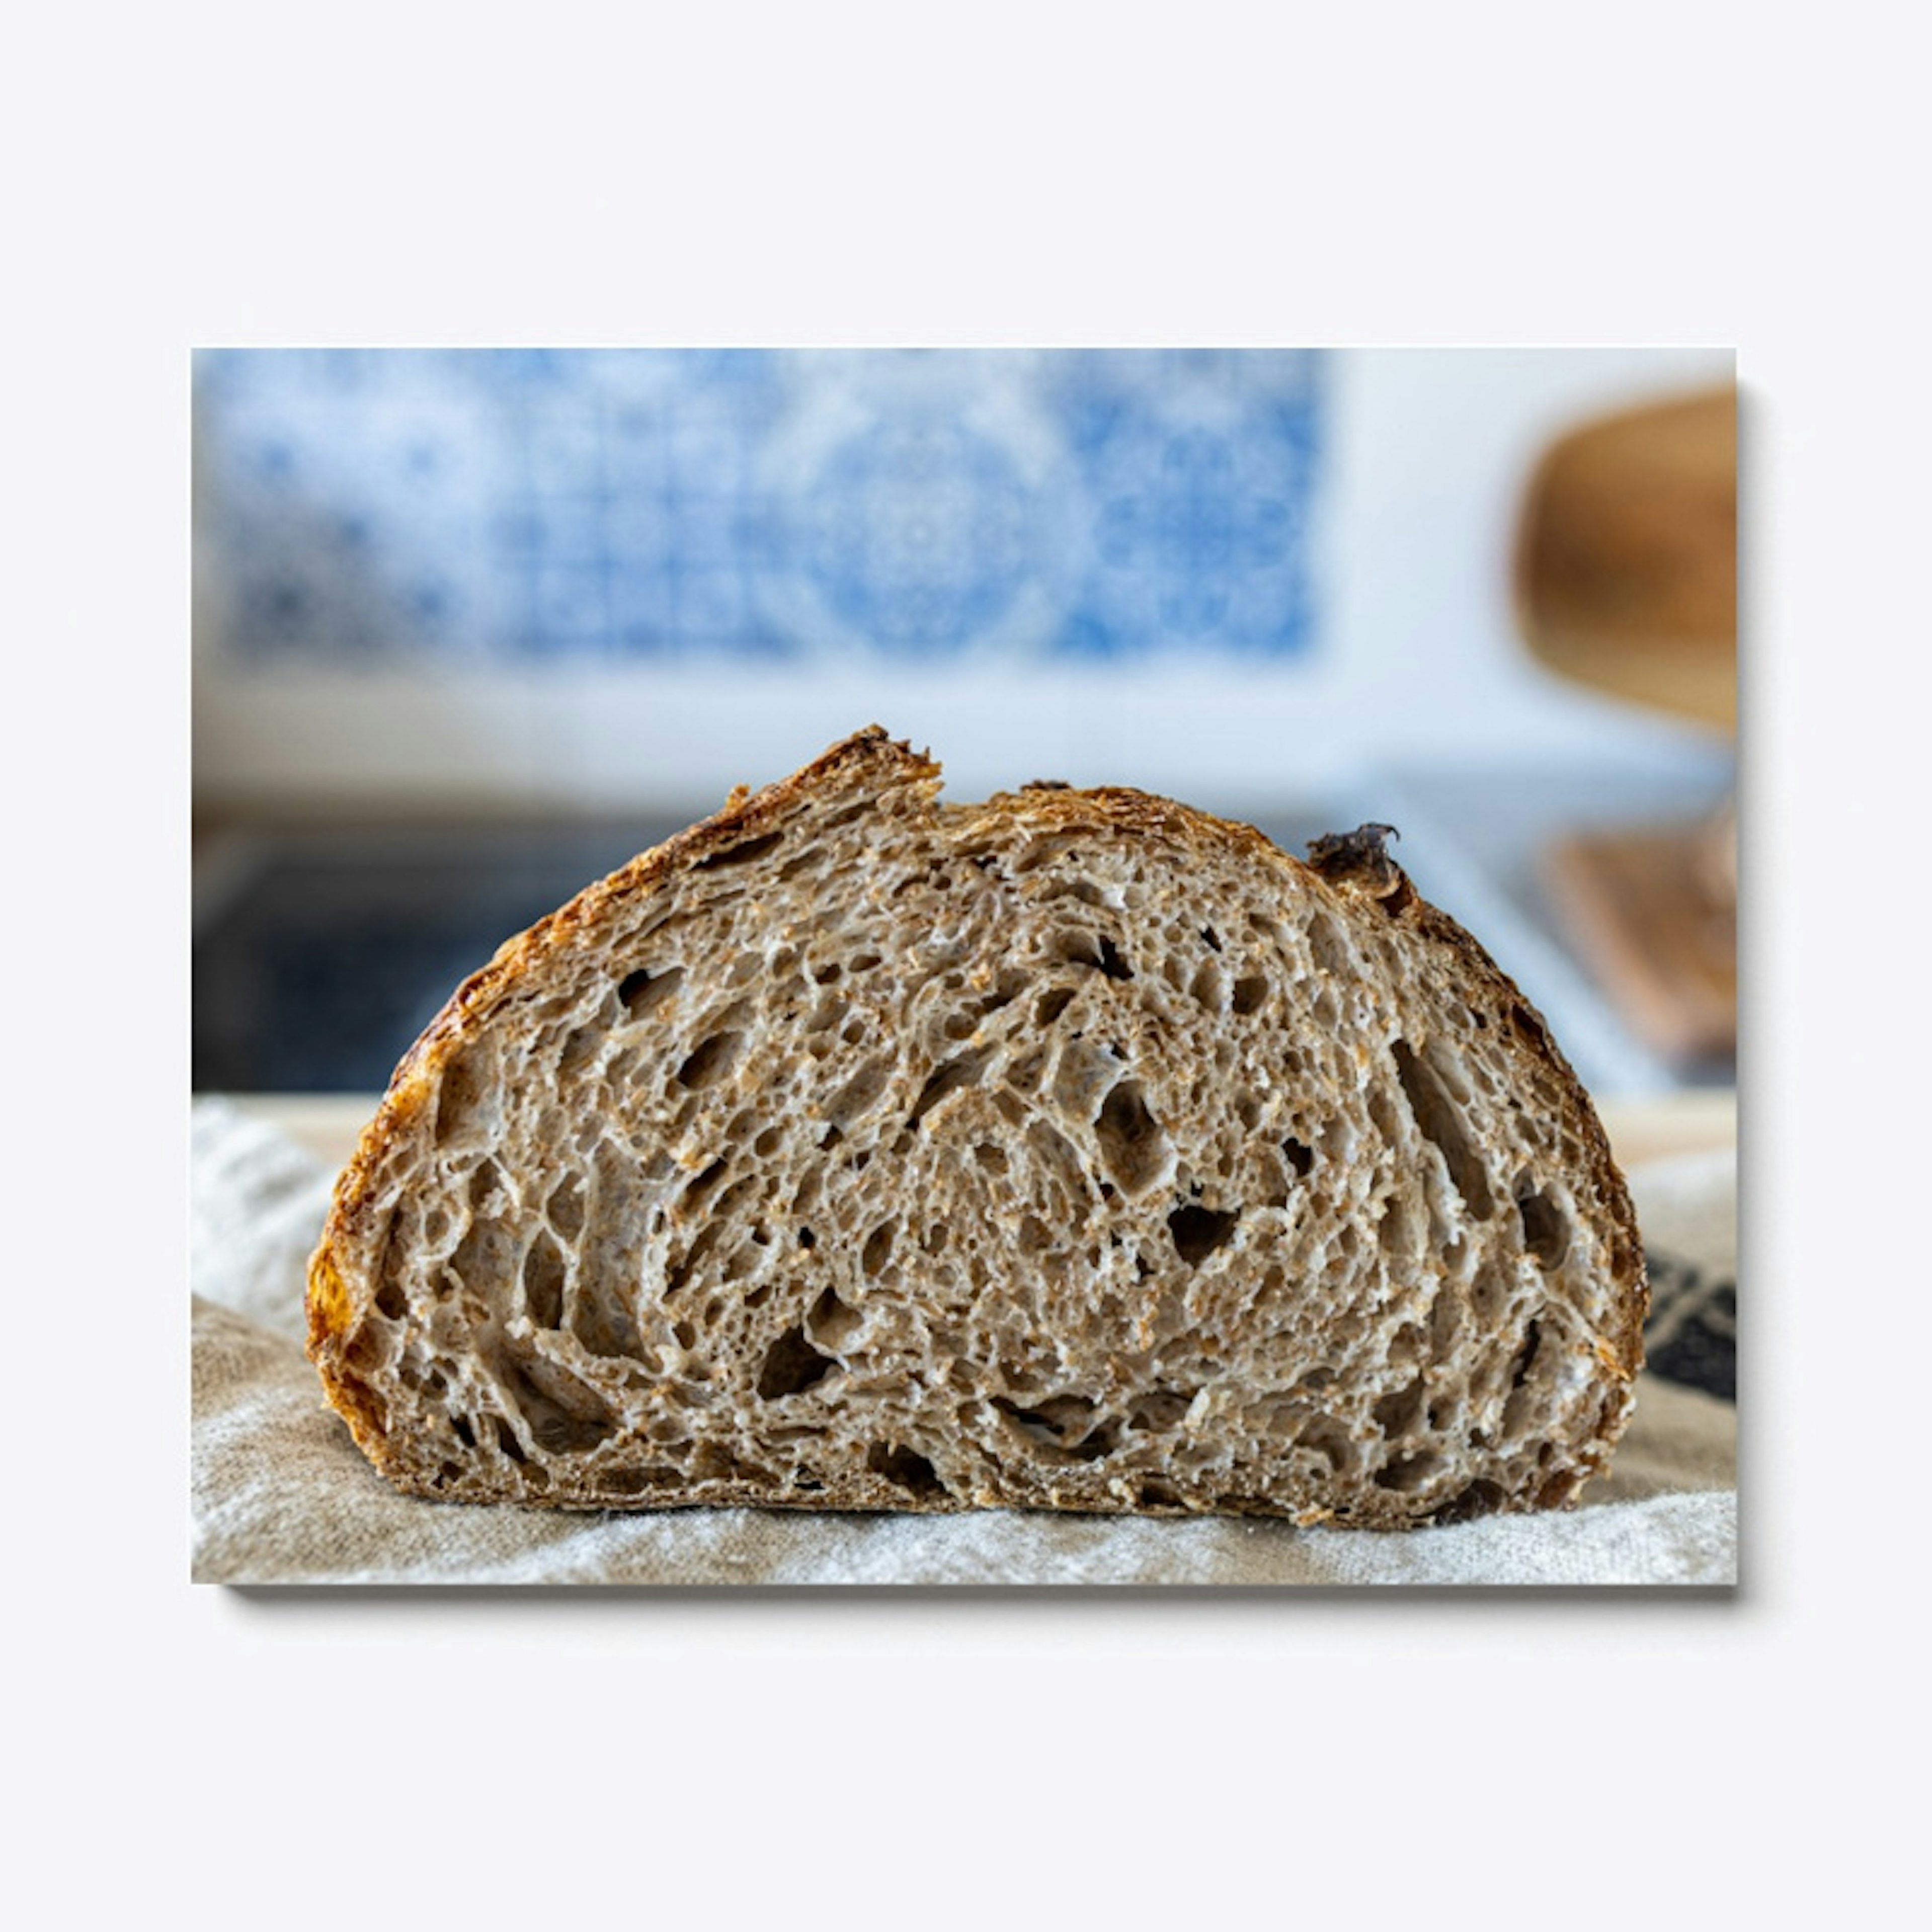 The perfect whole wheat sourdough bread